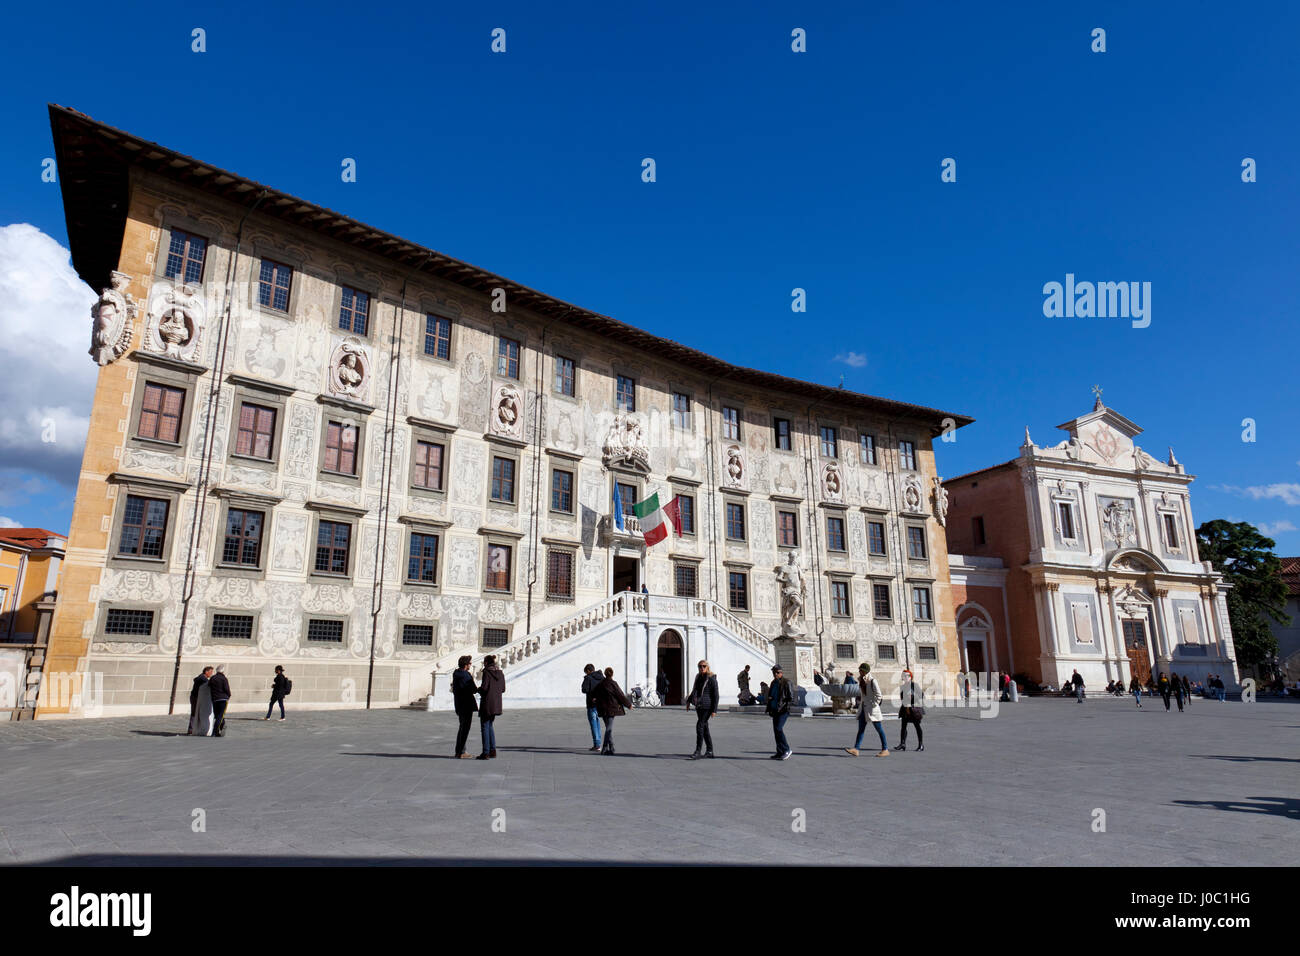 La Knight's Palace et l'église de Saint Stephen des Chevaliers, la Piazza dei Cavalieri, Pise, Toscane, Italie Banque D'Images